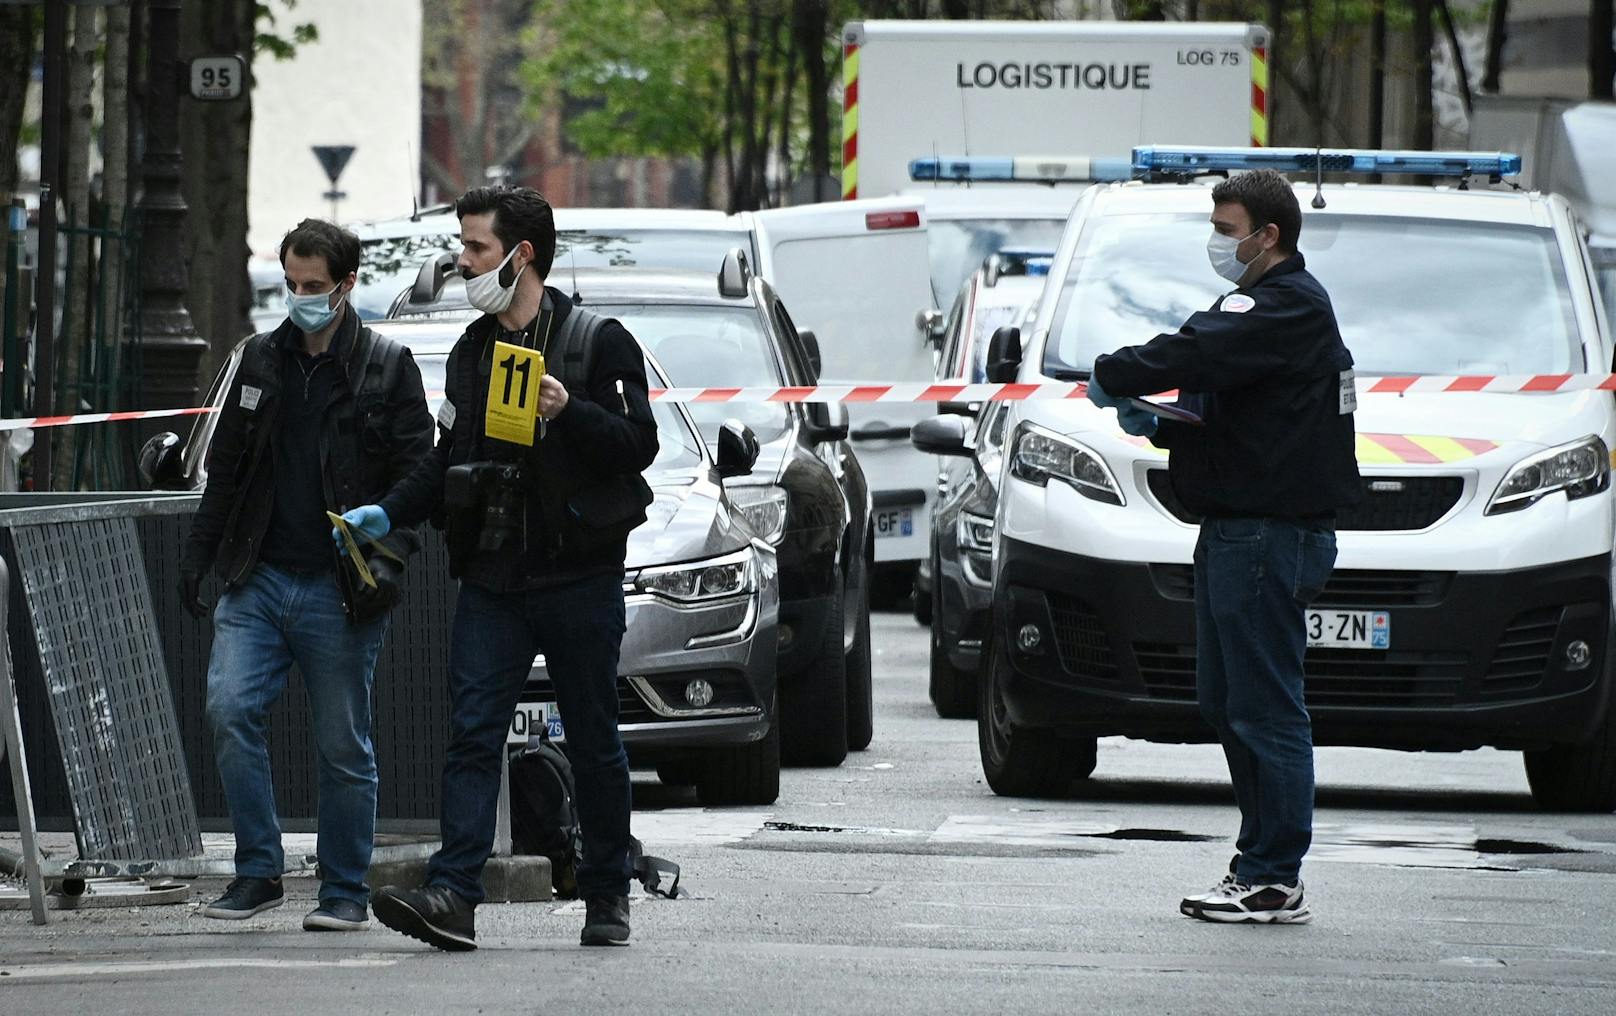 Am Dienstag gegen Mittag ist ein Mädchen (10) in der Nähe von Paris angeschossen und verletzt worden. Die Polizei geht von einem Akt aus Vergeltung aus.